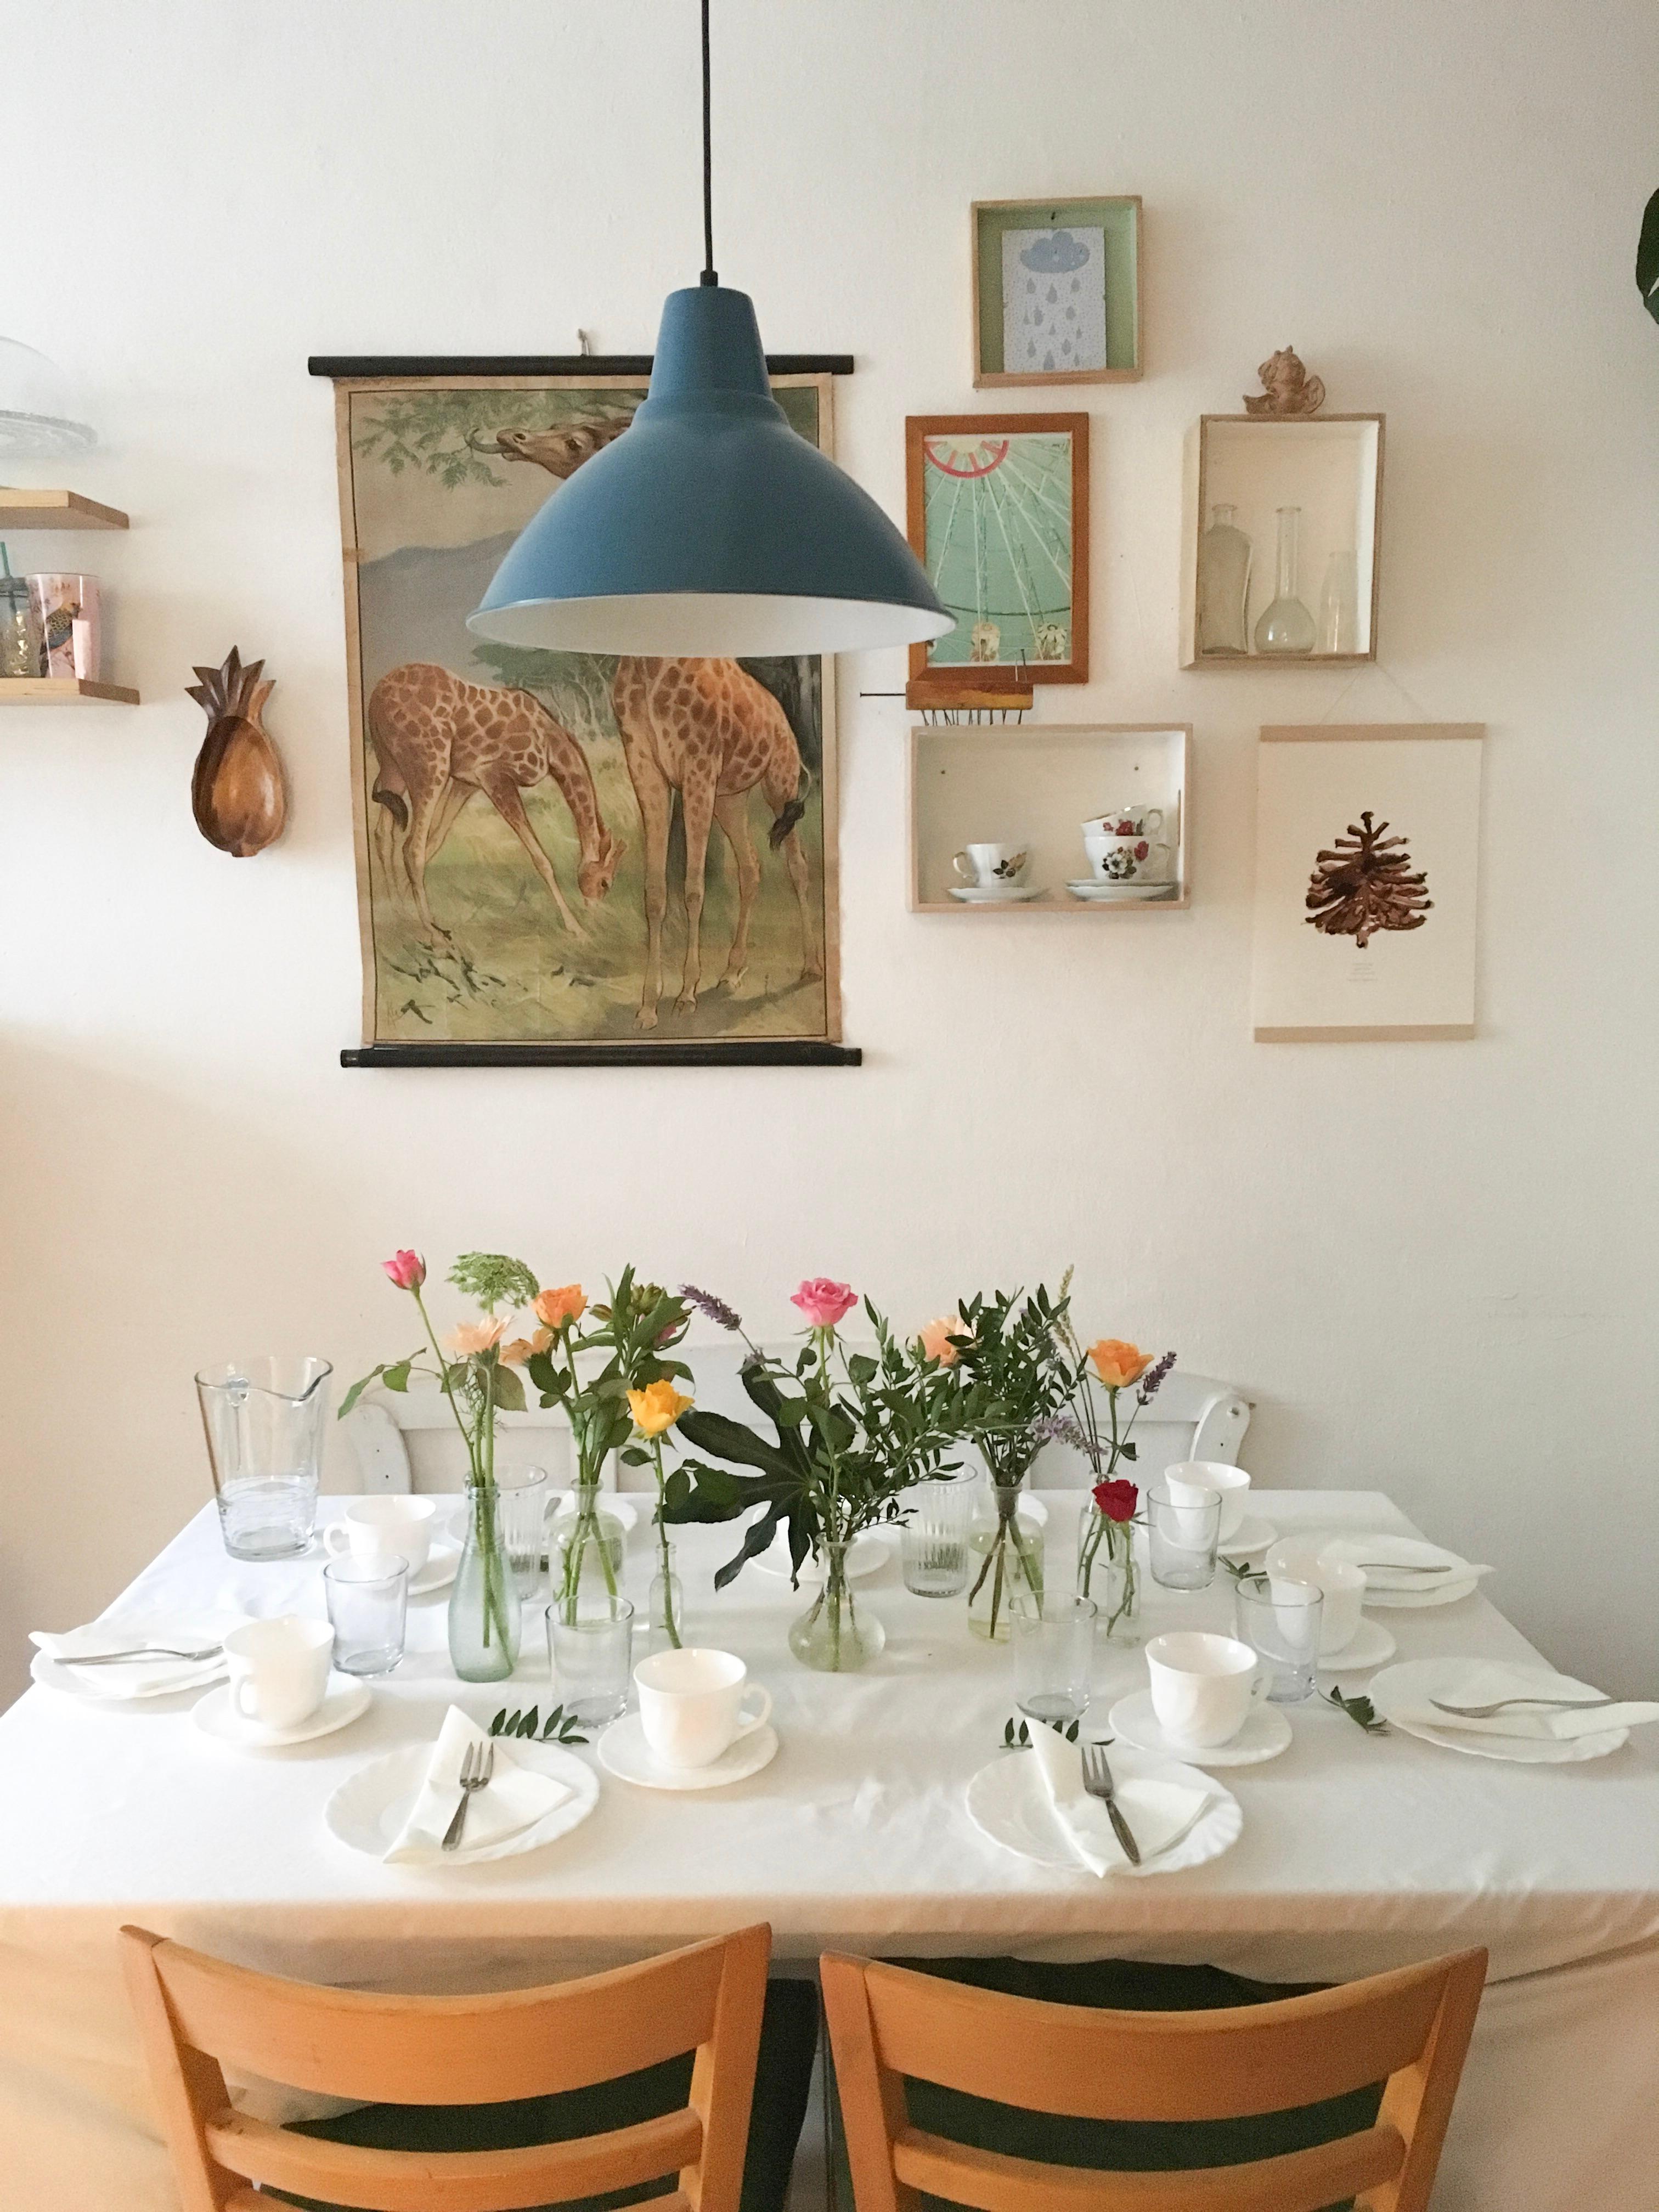 Wir warten auf Gäste 🌸
#küche #vintage #ikea #blumen 